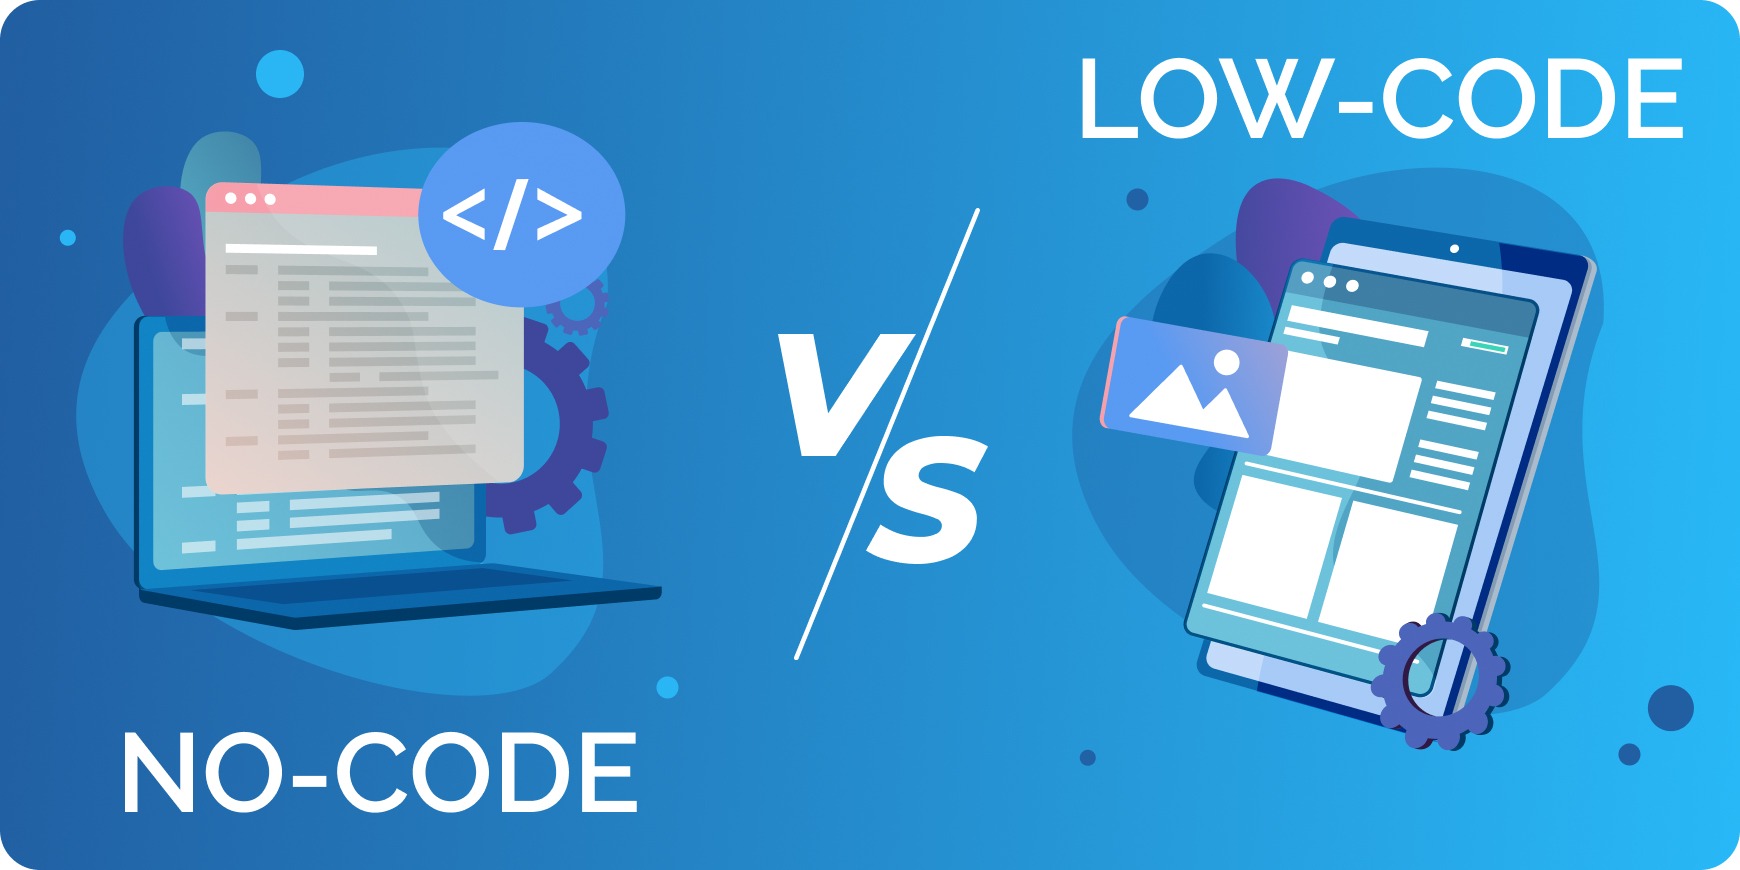 No-code vs Low-code